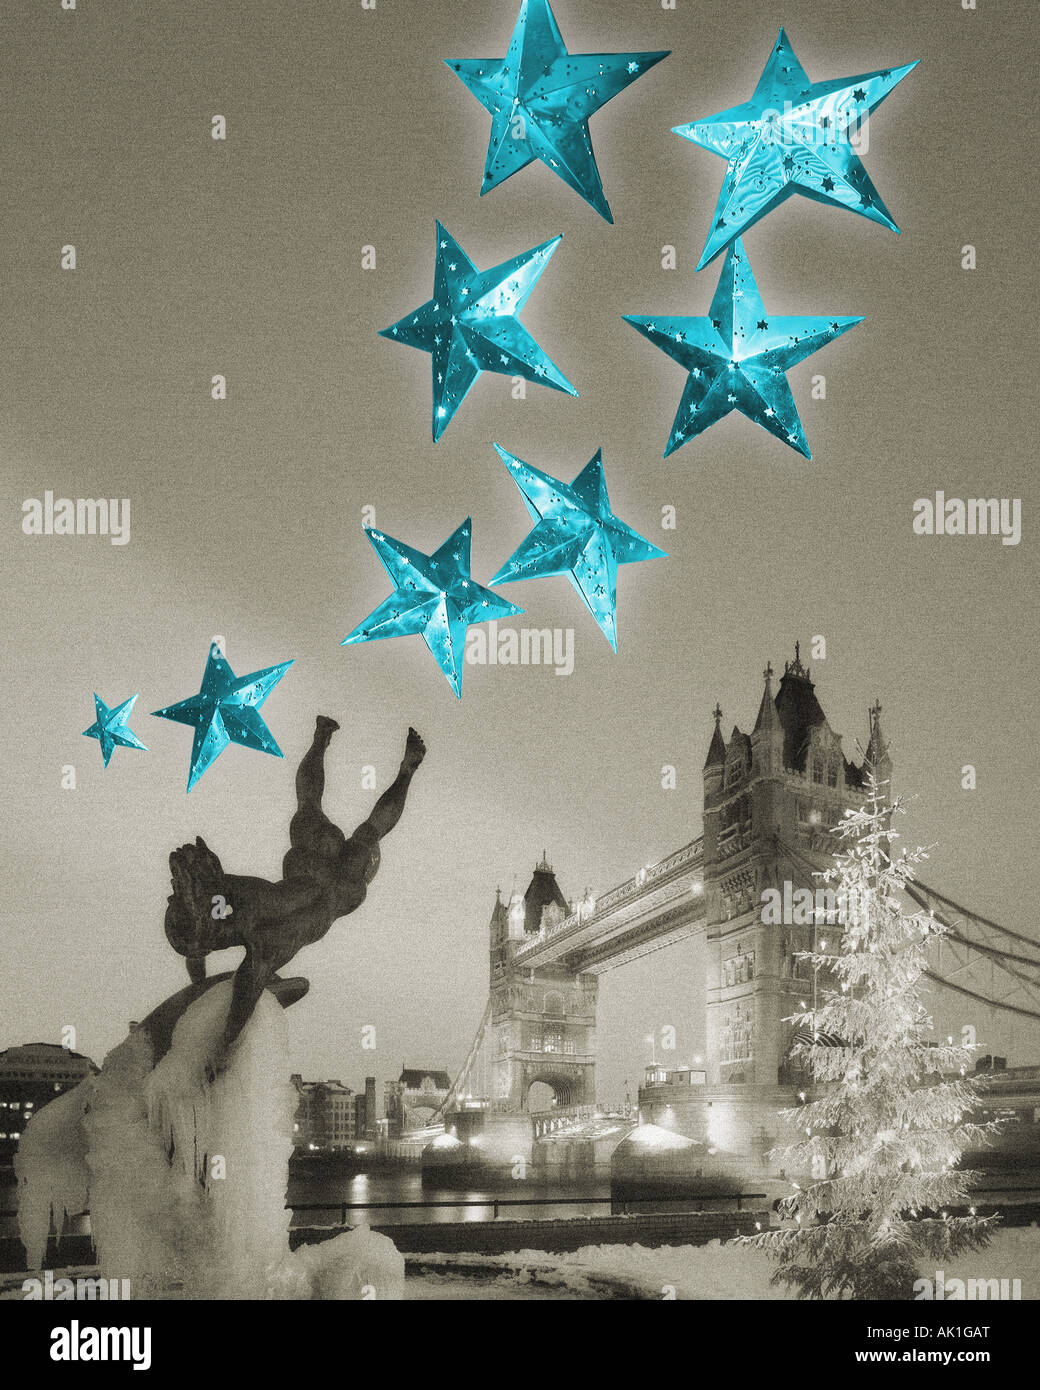 GB - LONDON: Weihnachten Konzept zeigt die Tower Bridge und Delphinbrunnen Stockfoto